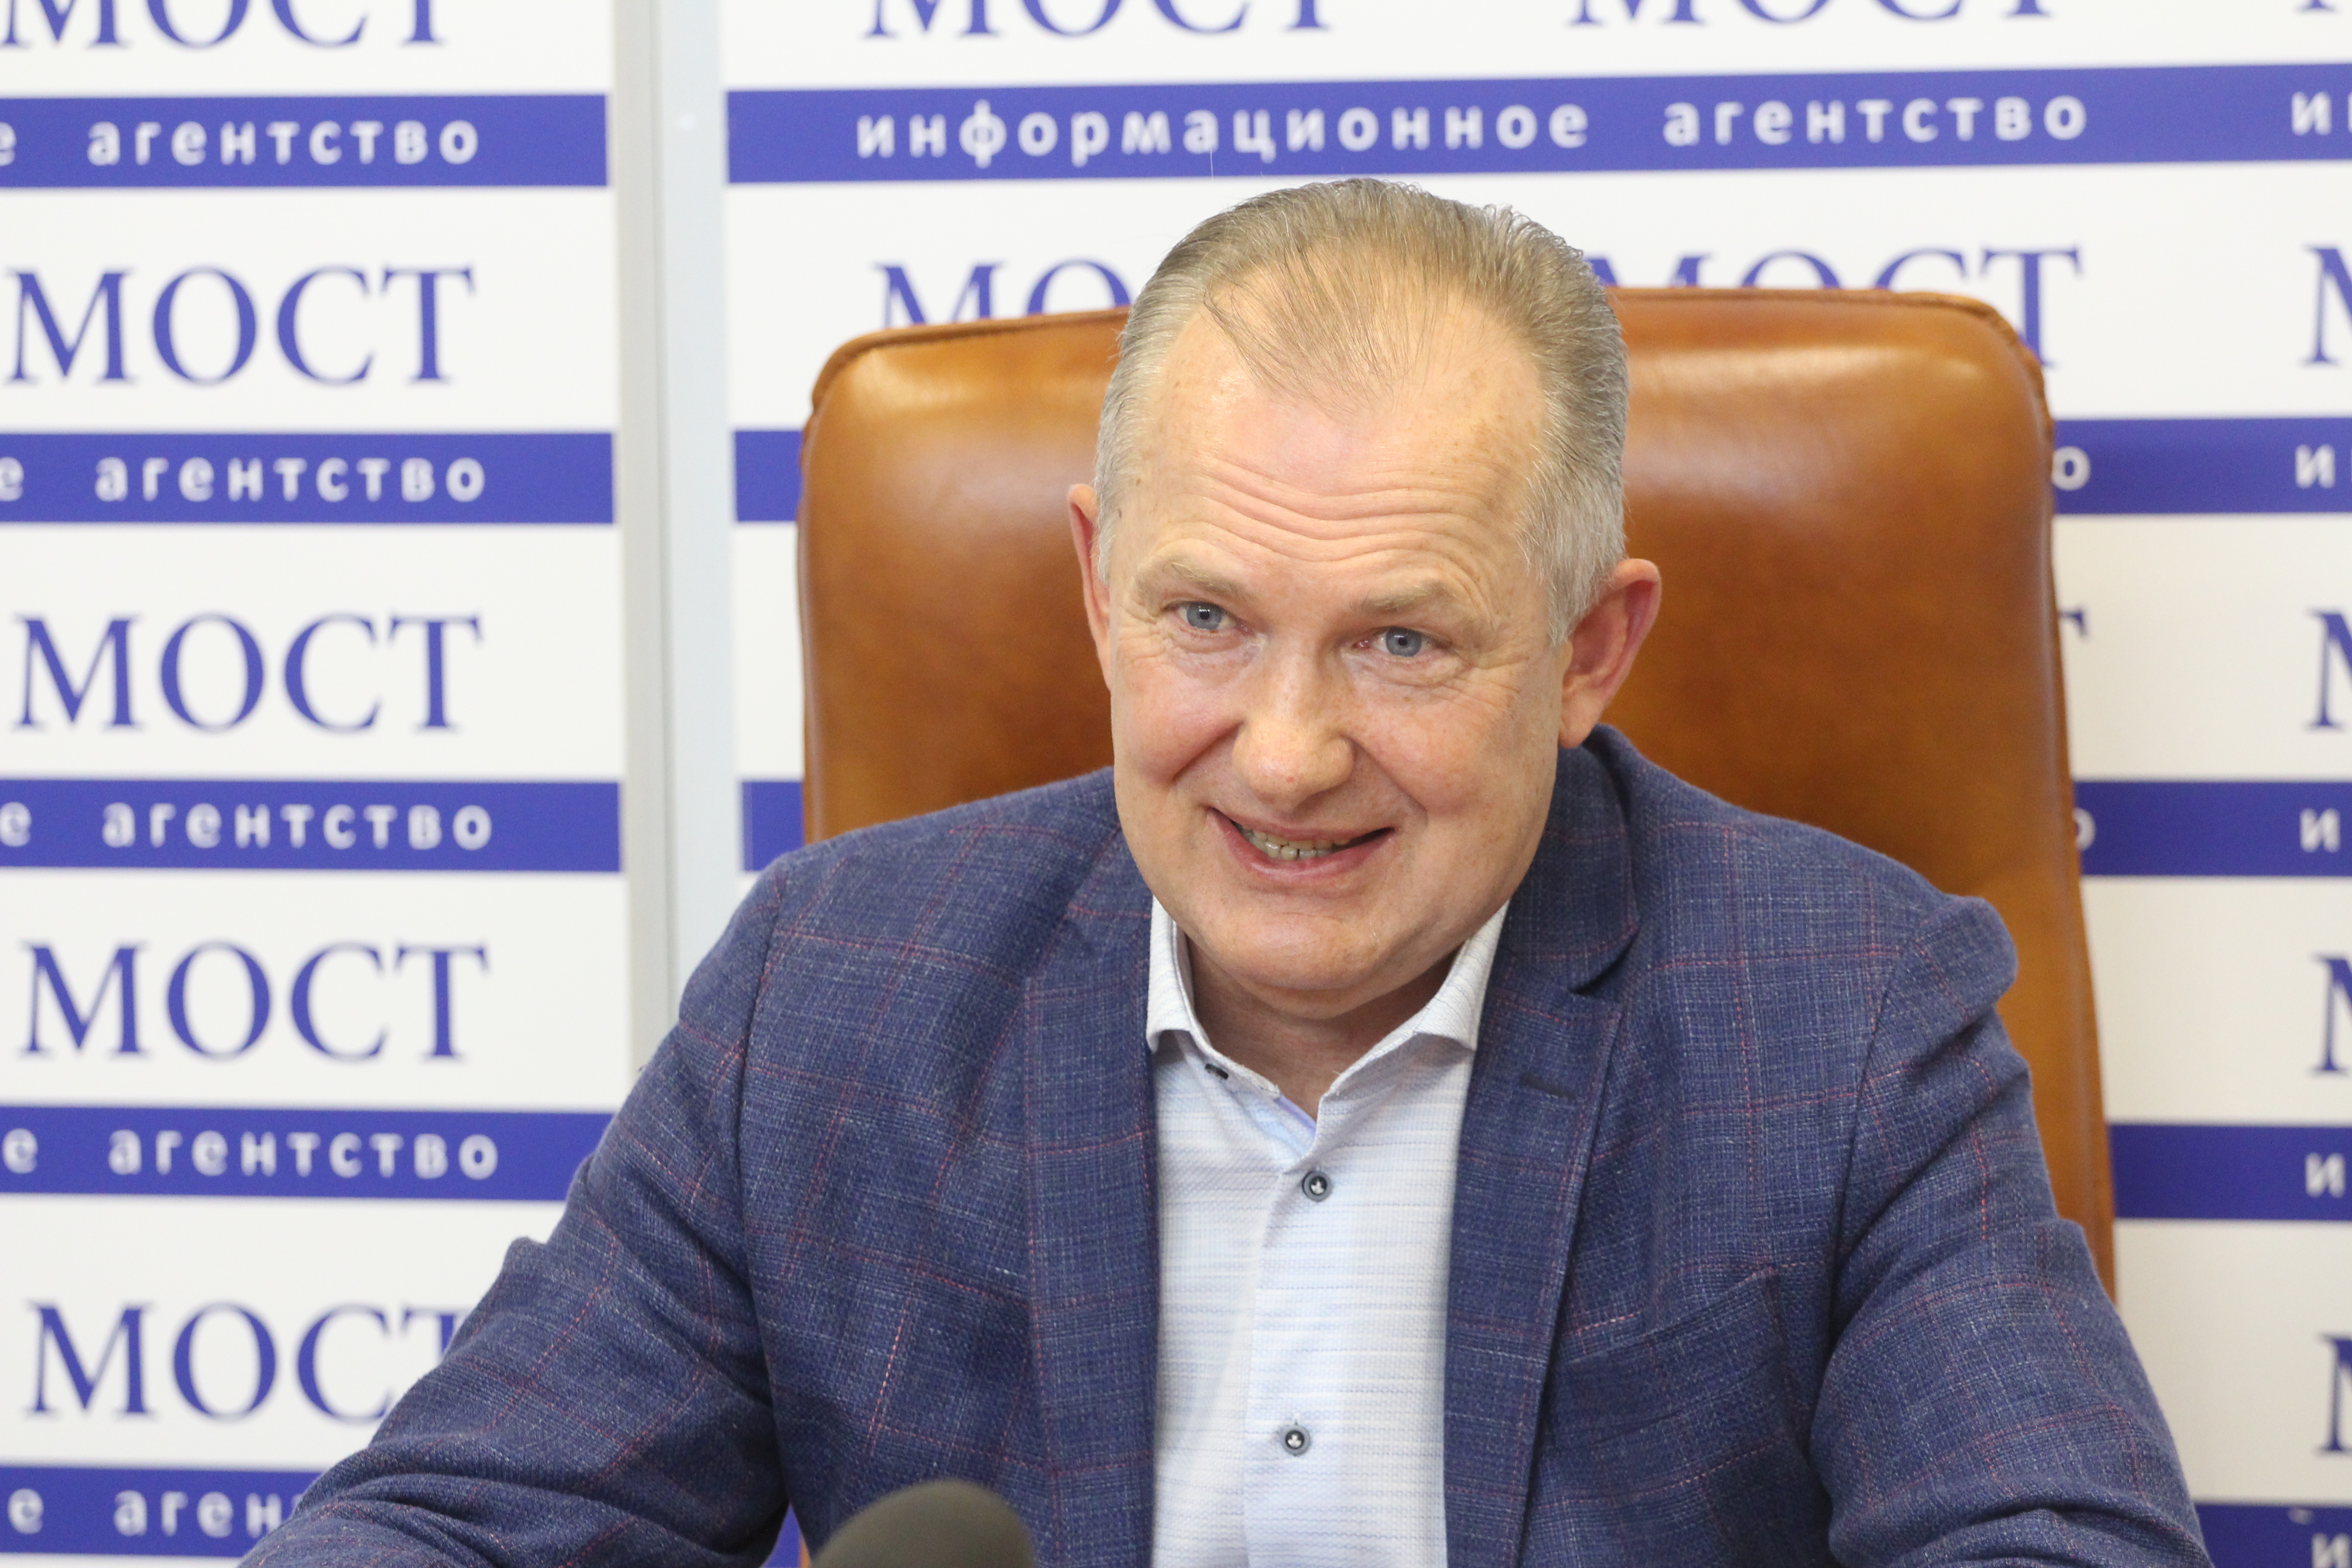 Хожу в гости по приглашению: Сергей Рыженко о собственной кандидатуре на пост мэра Днепра